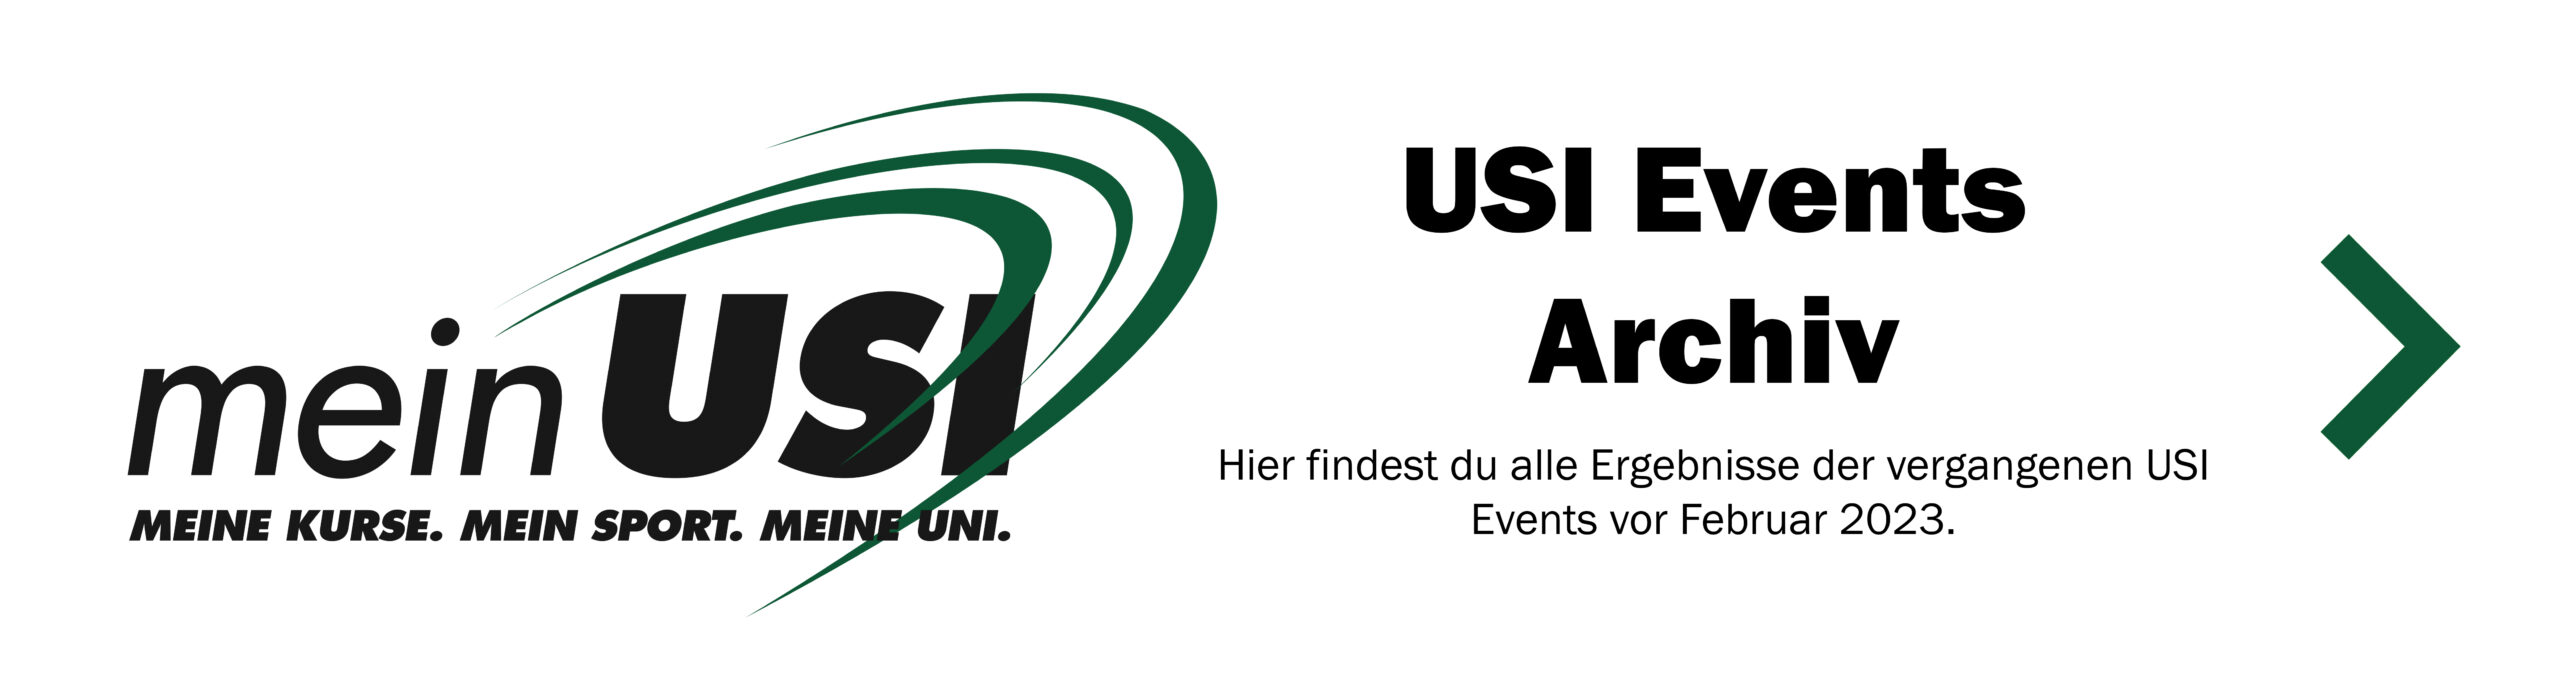 USI Events Archiv